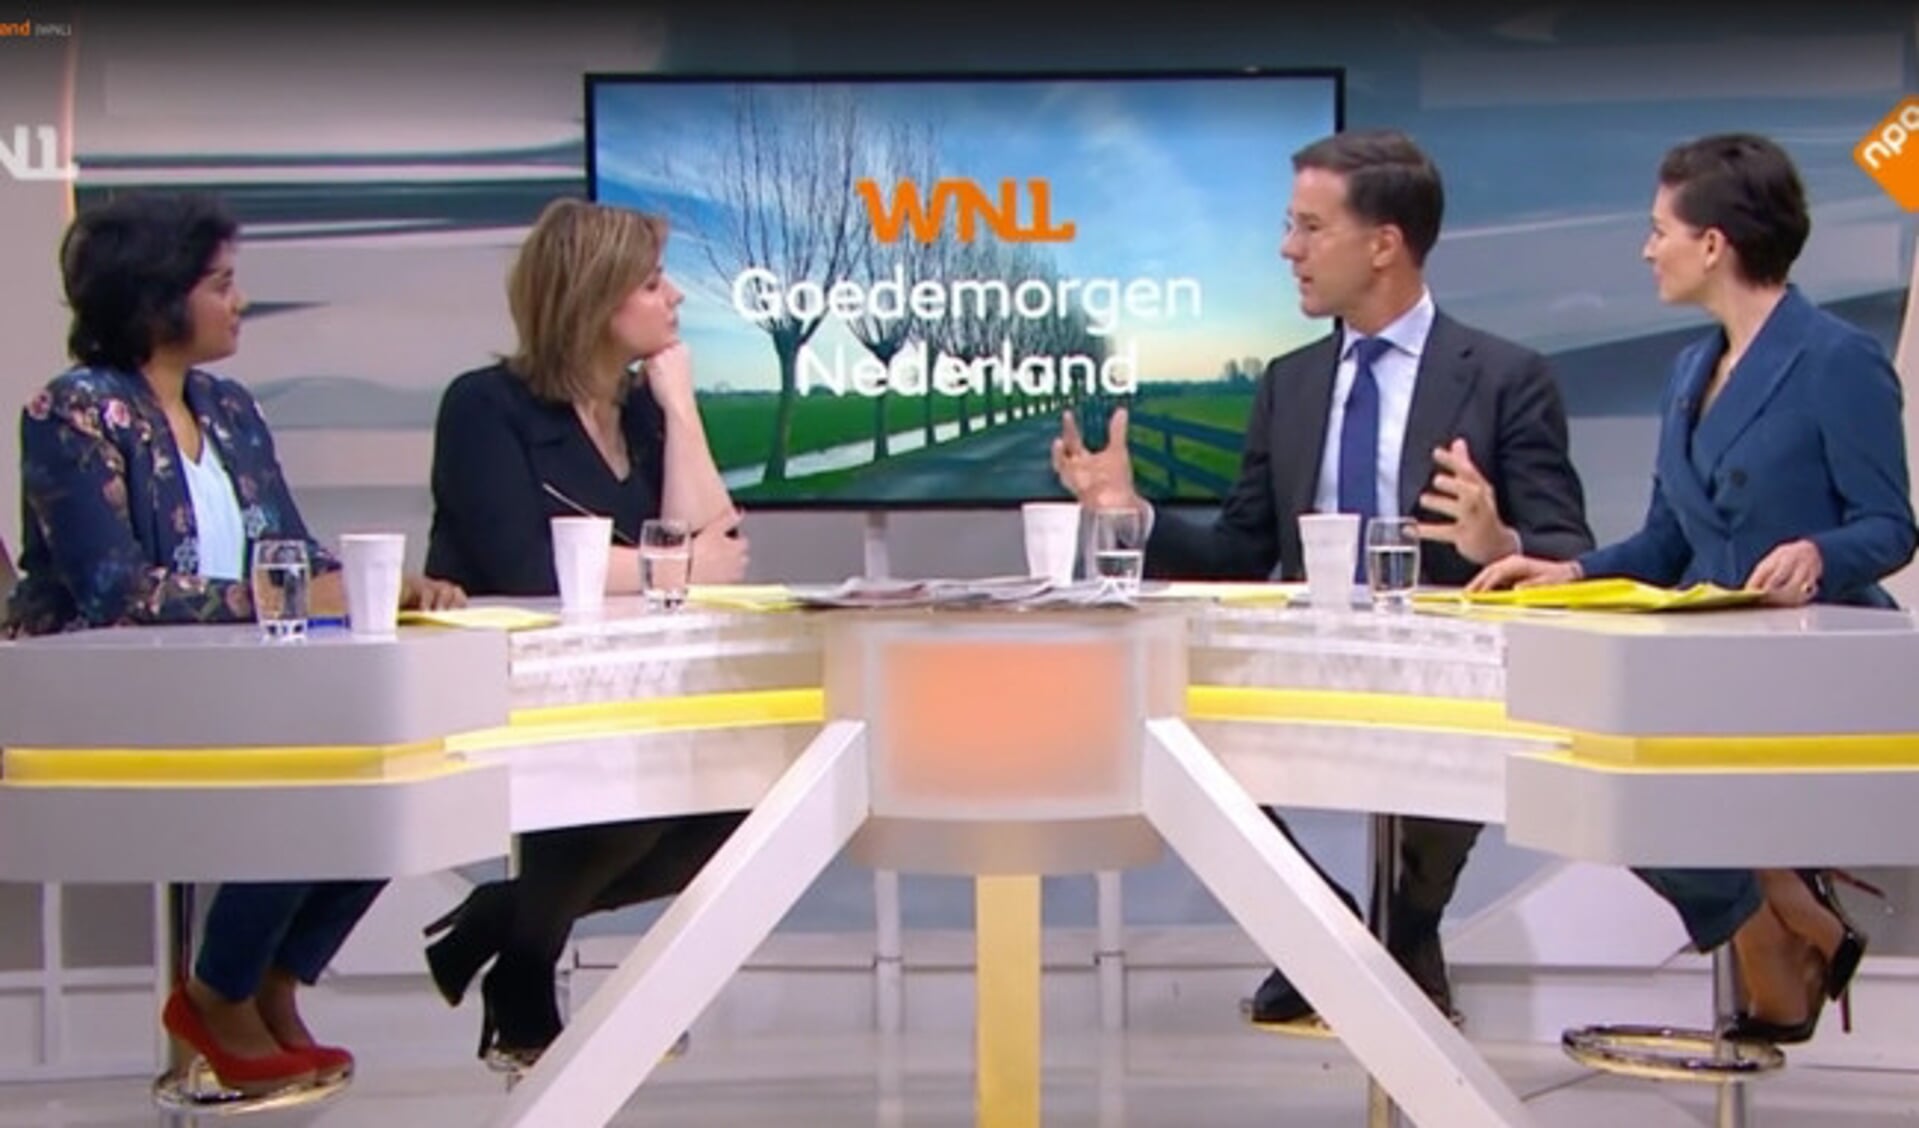  Irene Korting (links) aan tafel bij 'Goedemorgen Nederland' met Mark Rutte.